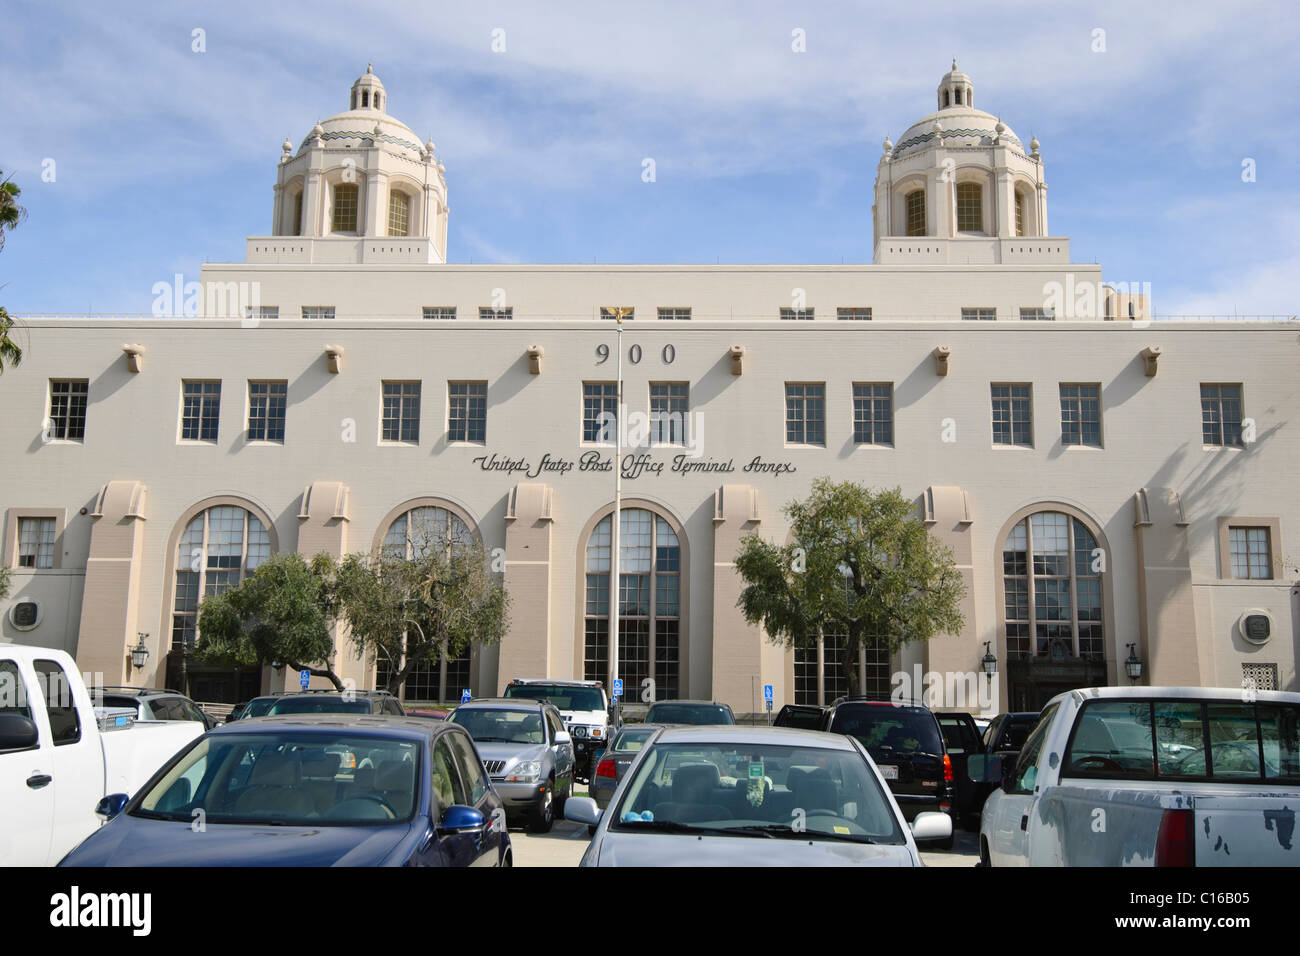 United States Post Office Terminal de Los Angeles l'annexe. Banque D'Images